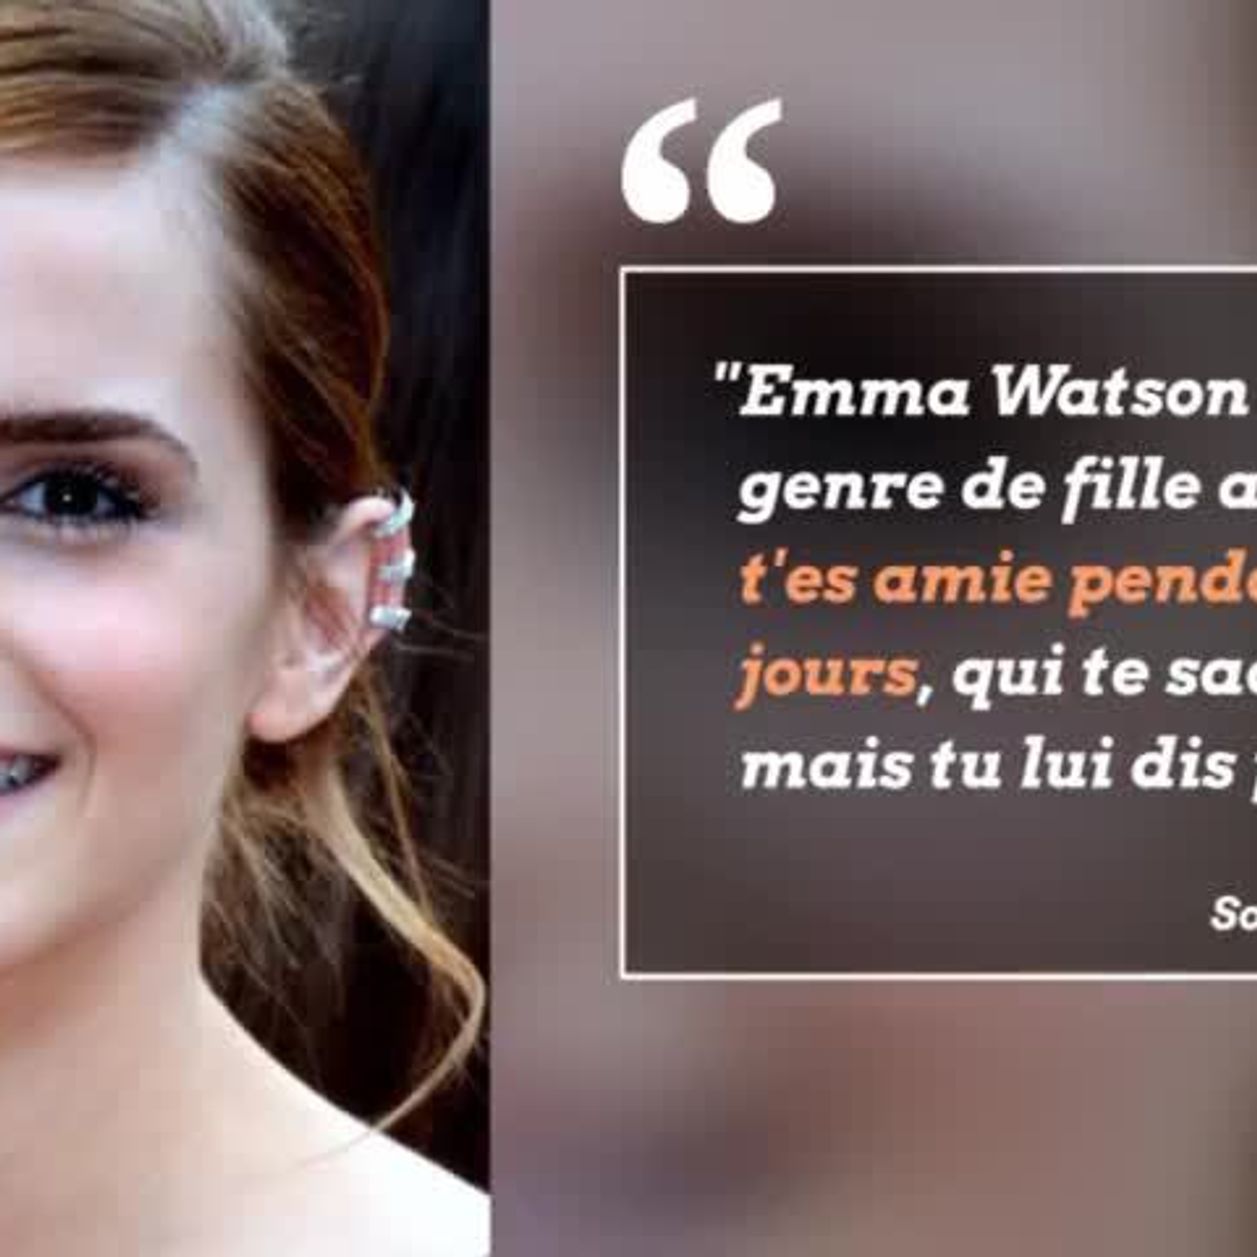 Emma Watson Decouvre En Direct Des Tweets Mechants La Concernant